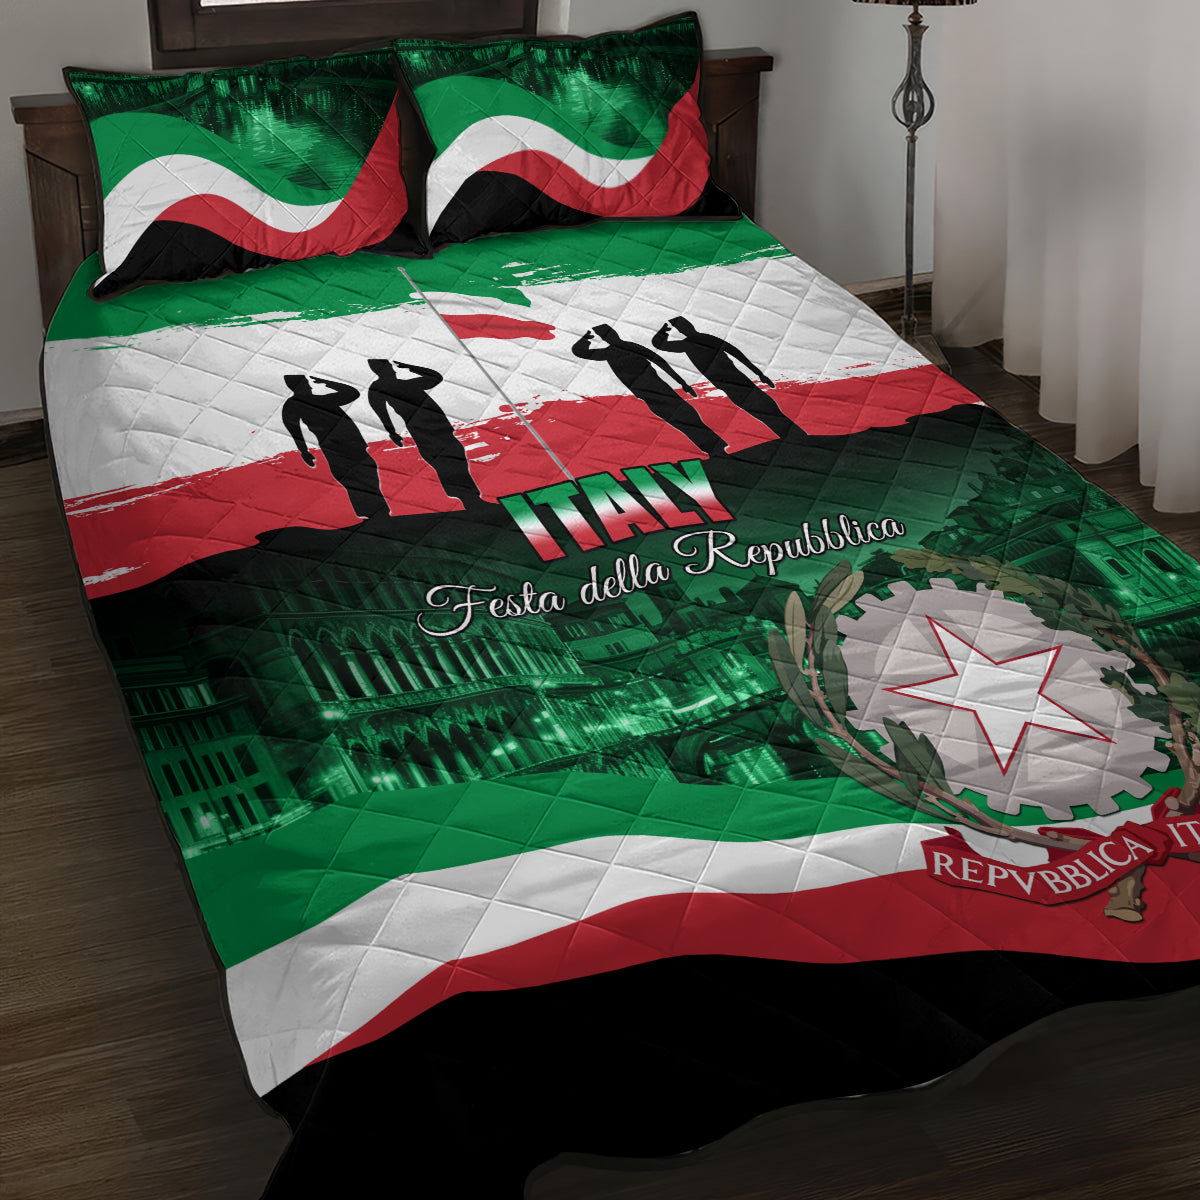 Italy Republic Day Quilt Bed Set Festa della Repubblica